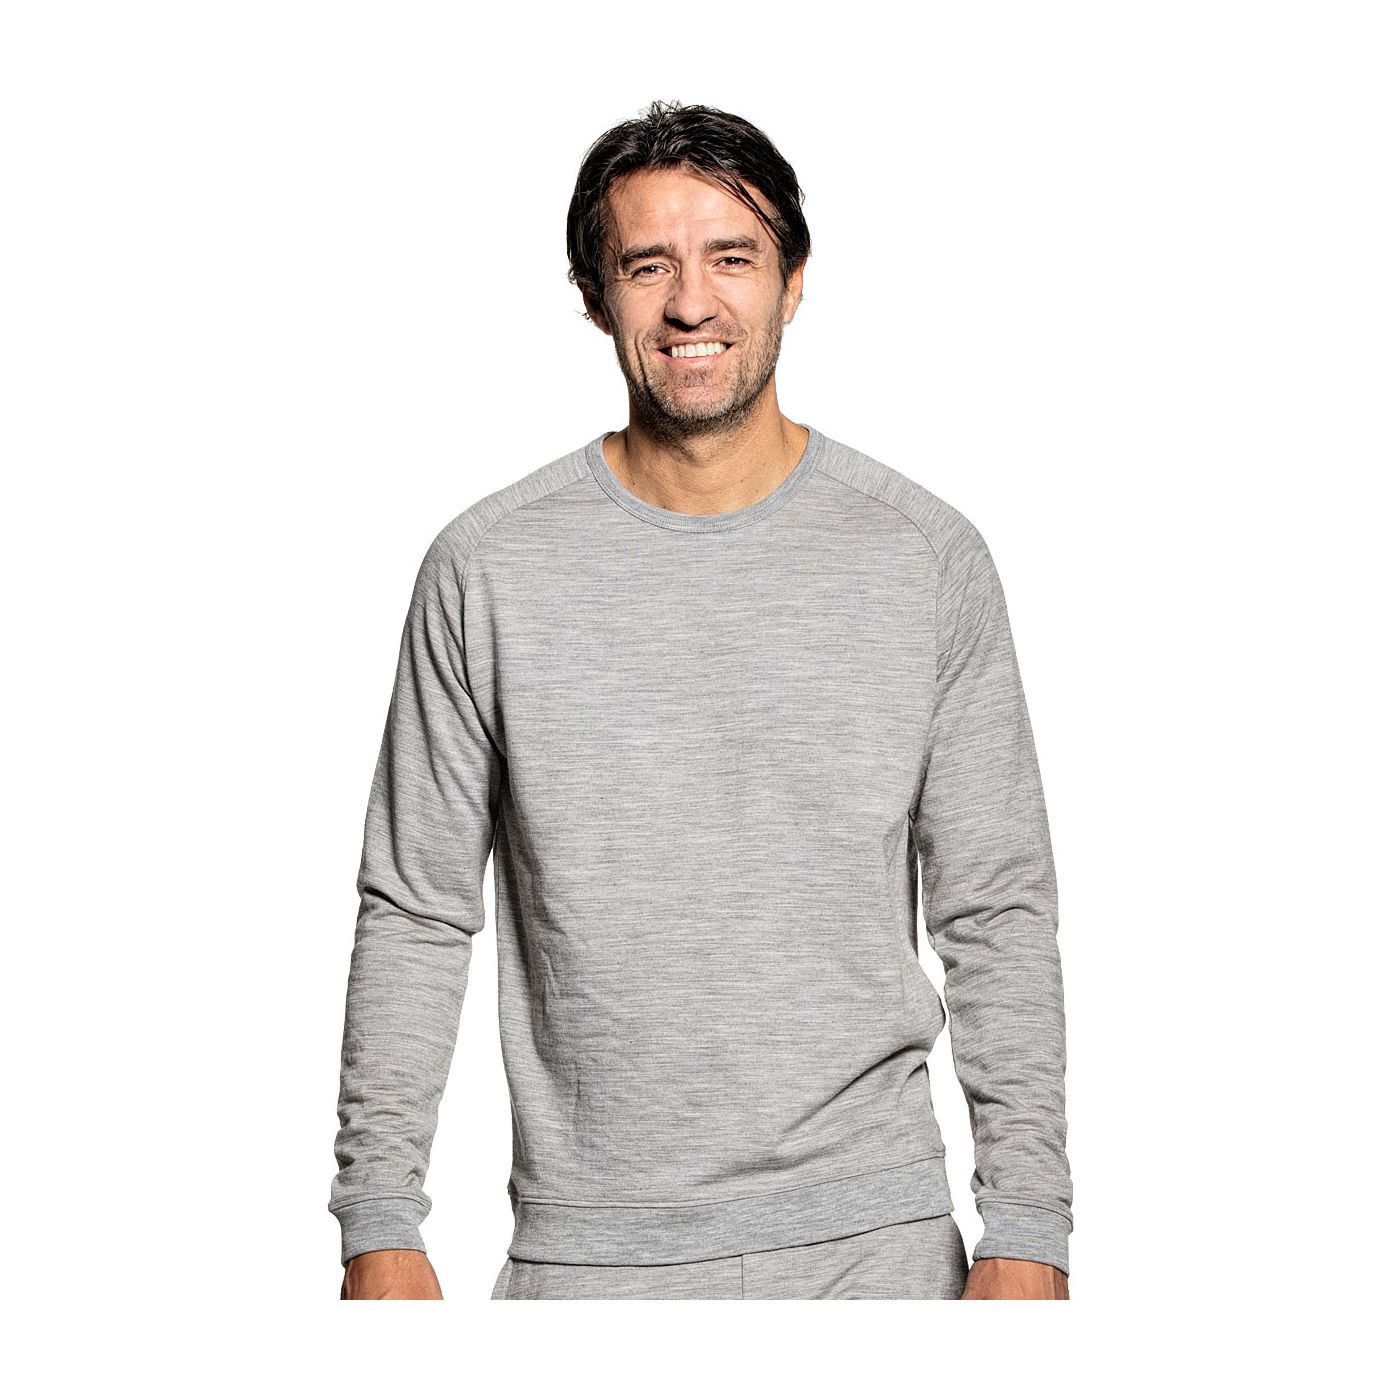 Sweatshirt voor mannen gemaakt van merinowol in het Grijs